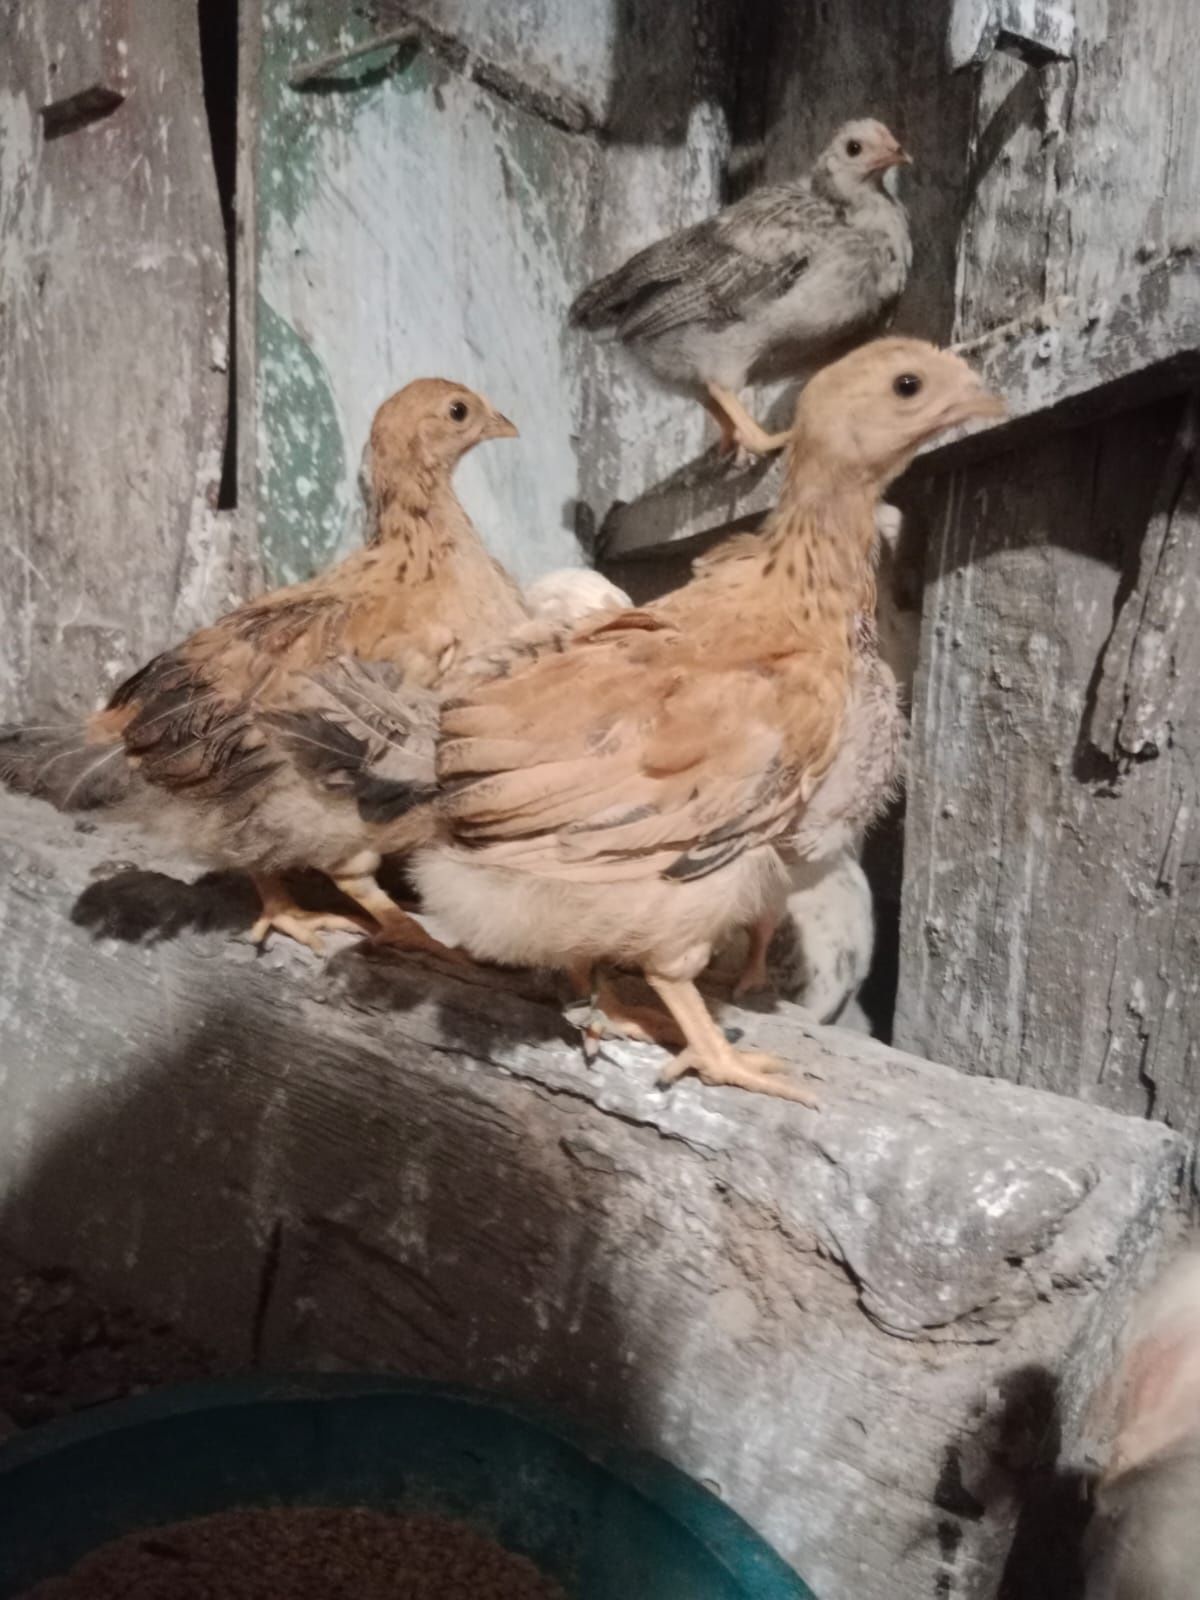 Продам цыплят Адлерская серебристая порода